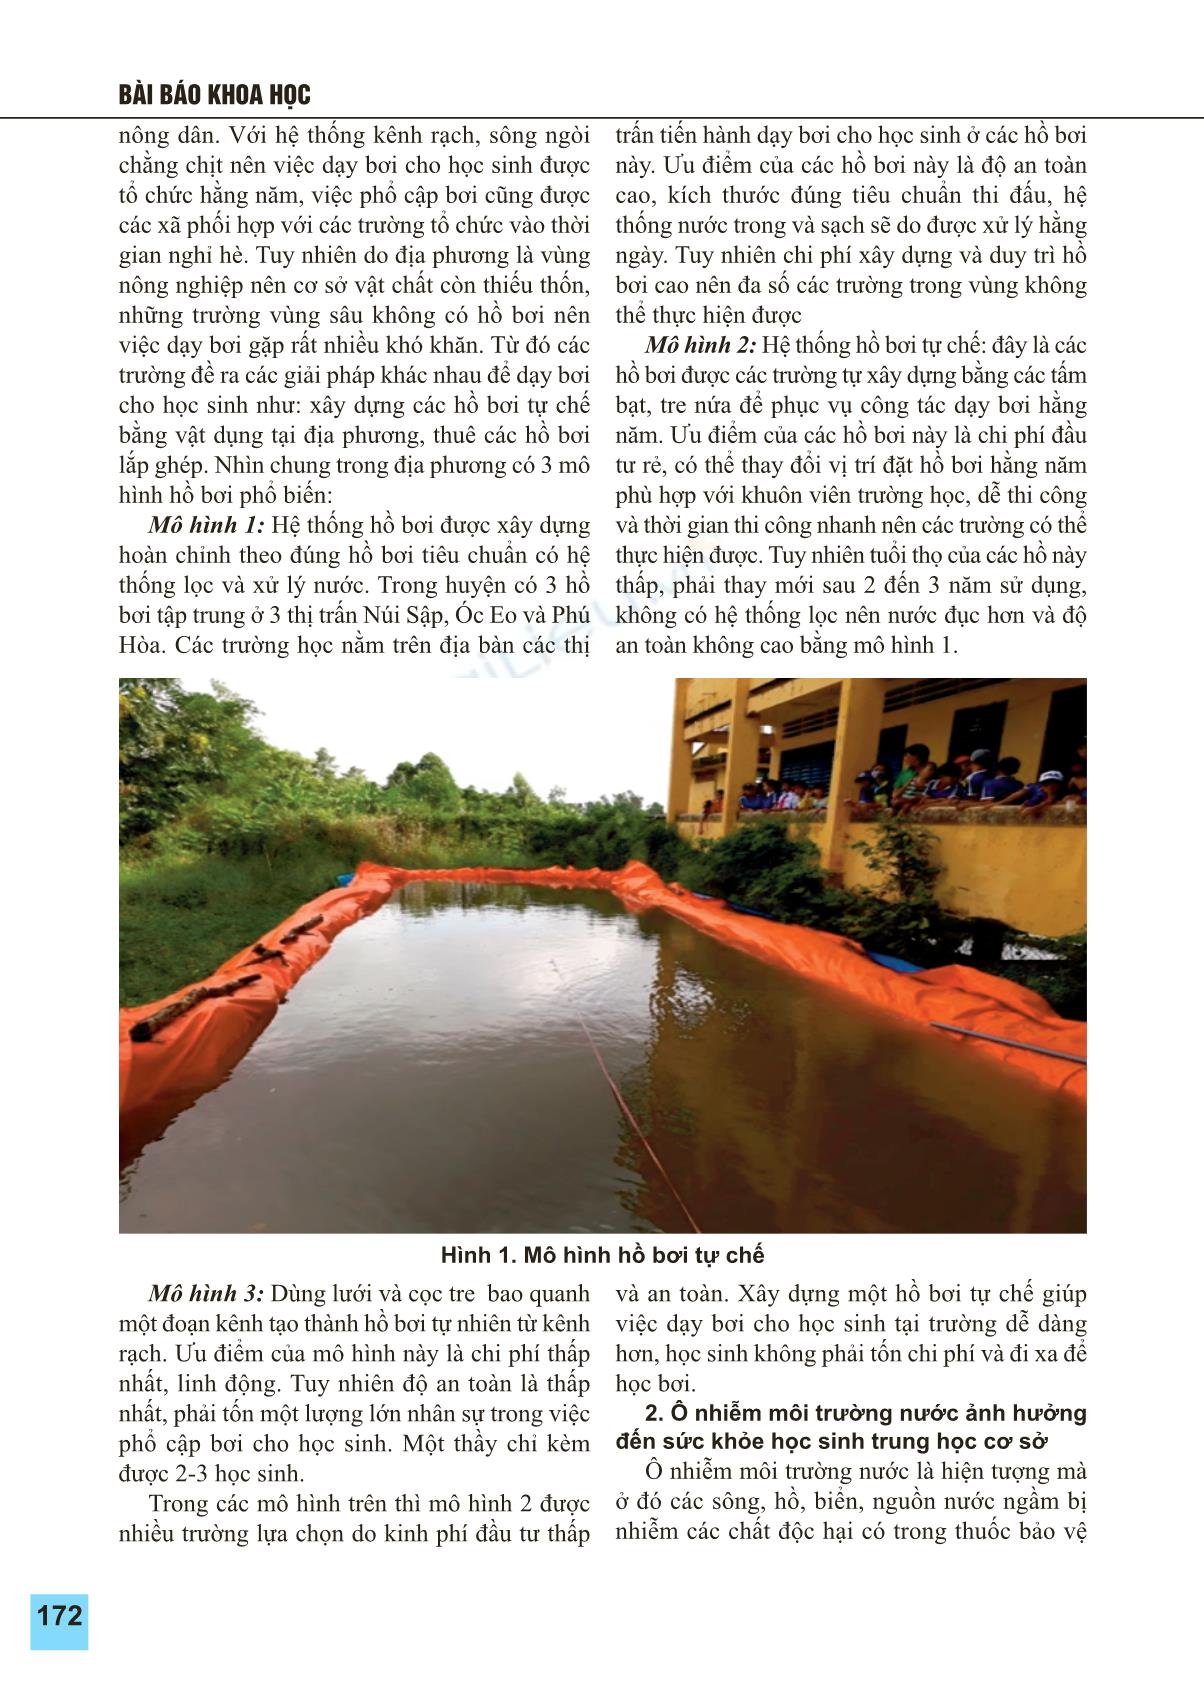 Ảnh hưởng ô nhiễm môi trường nước trong dạy học bơi cho học sinh Trung học Cơ sở huyện Thoại Sơn tỉnh An Giang trang 2